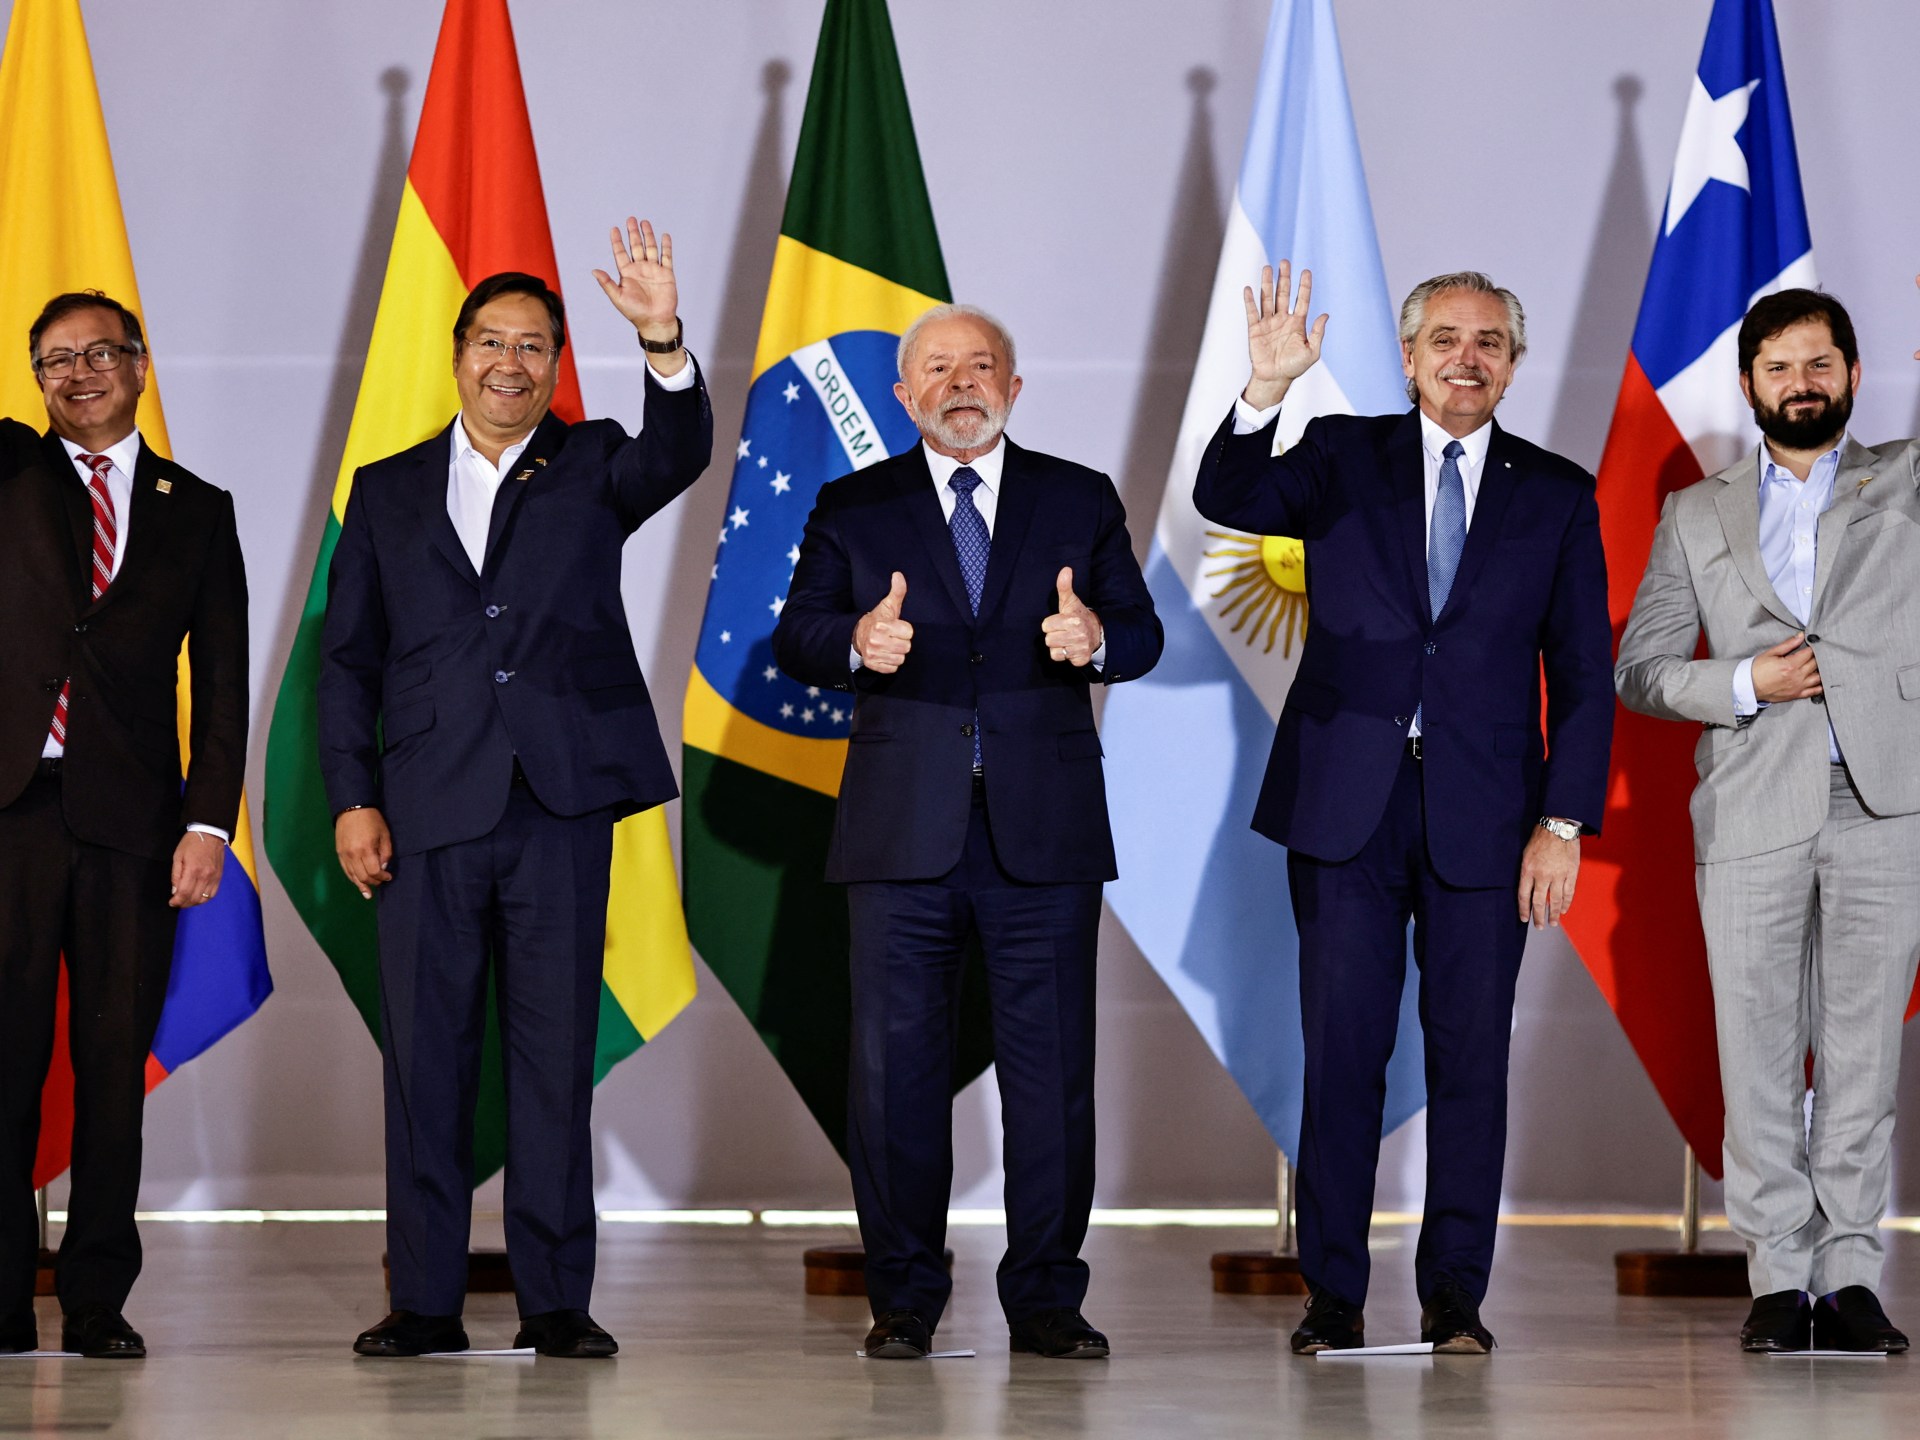 Amerika Selatan: Jalan yang Sulit Menuju Persatuan |  Berita Politik